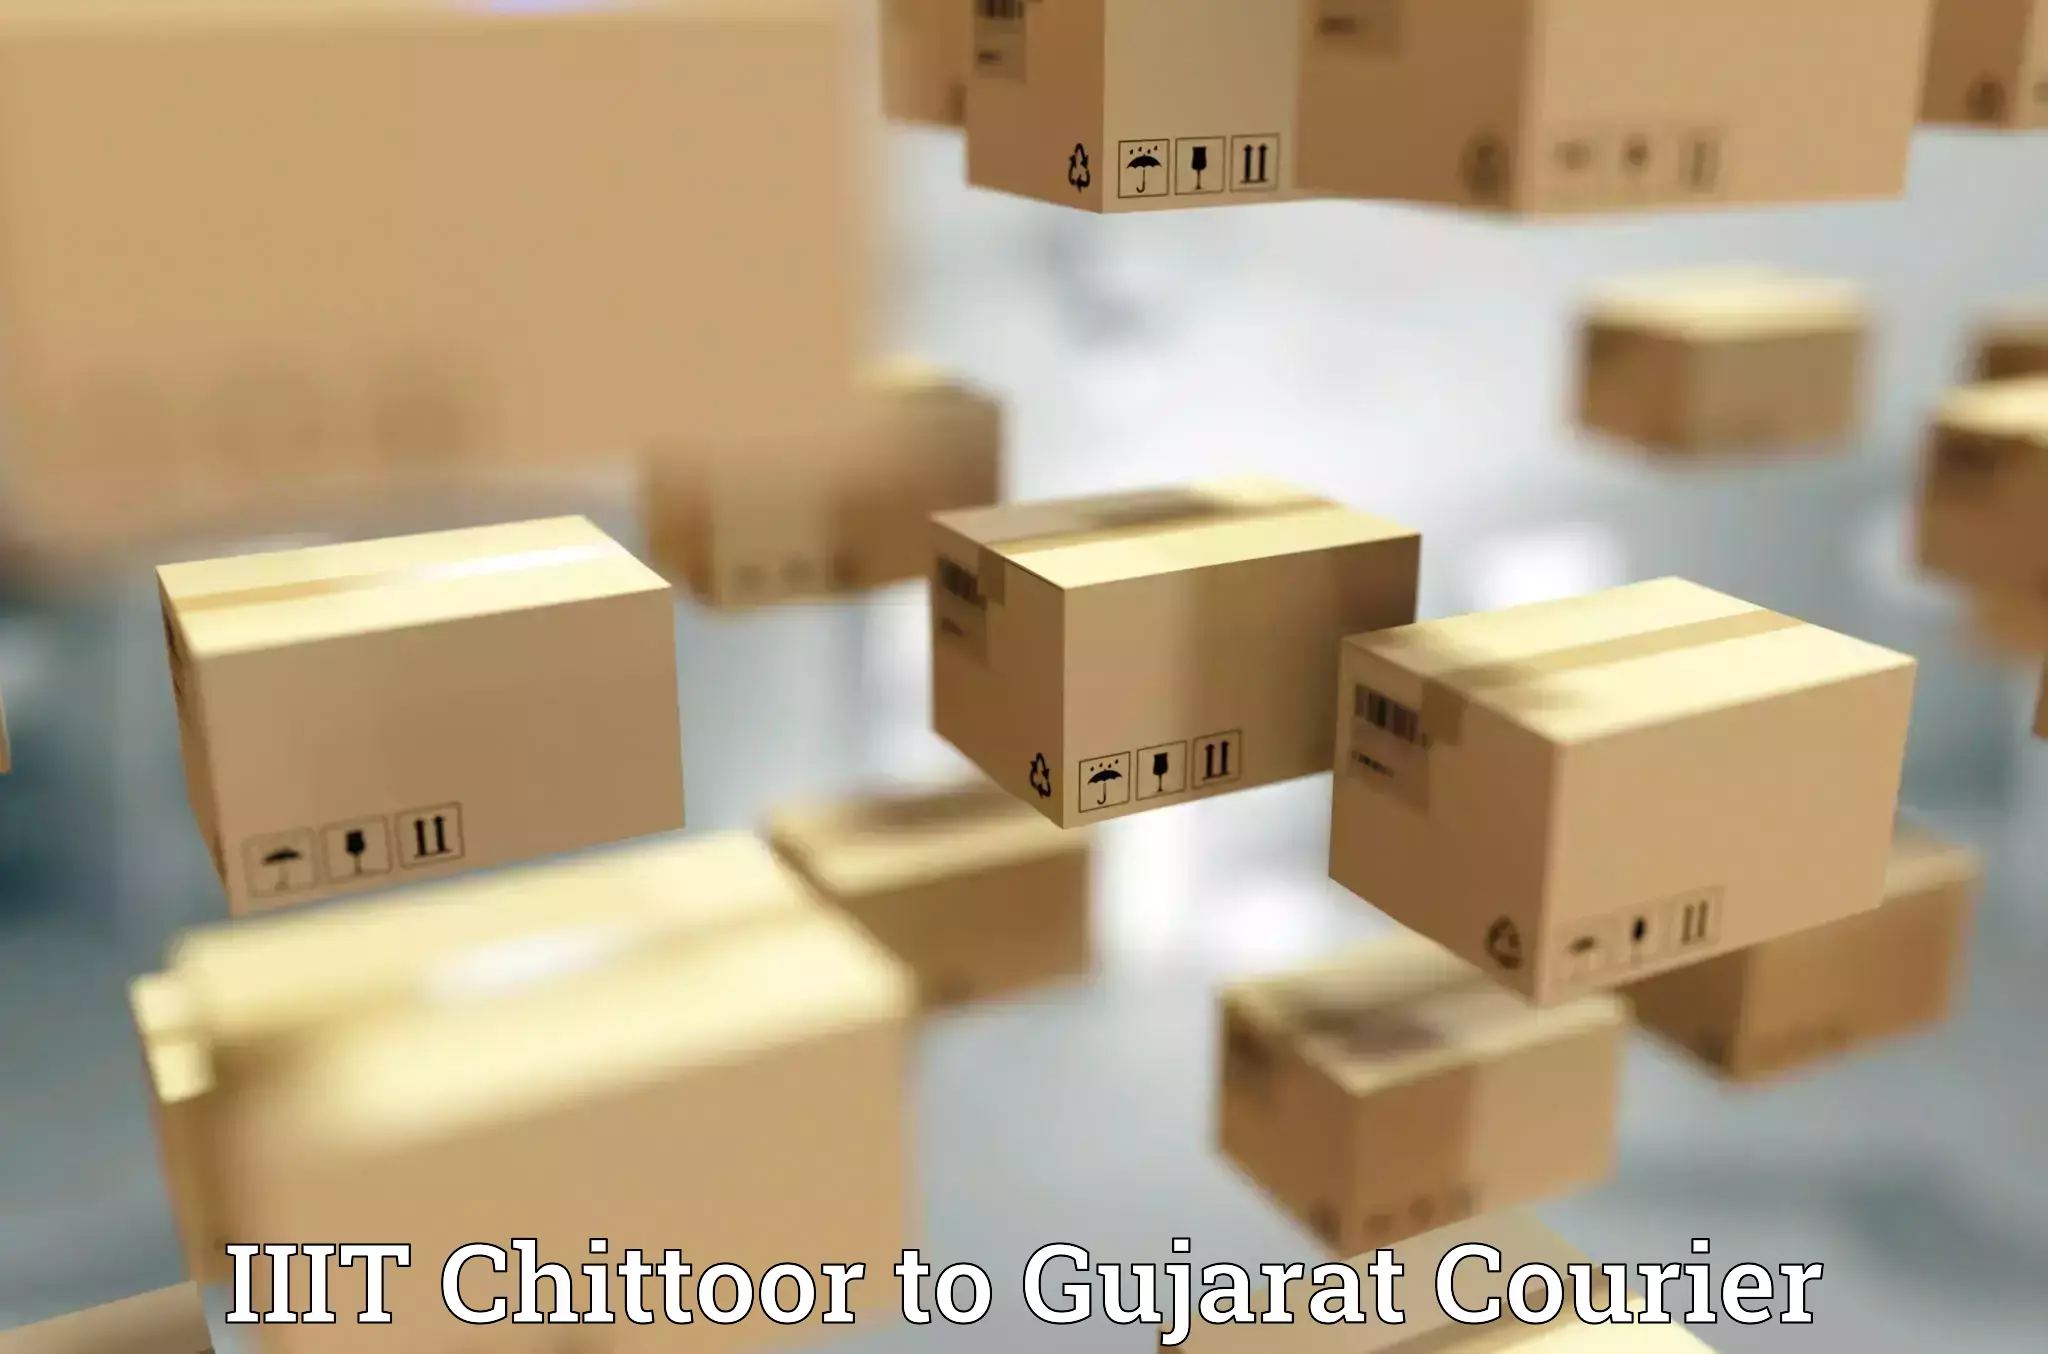 Courier app IIIT Chittoor to Gujarat